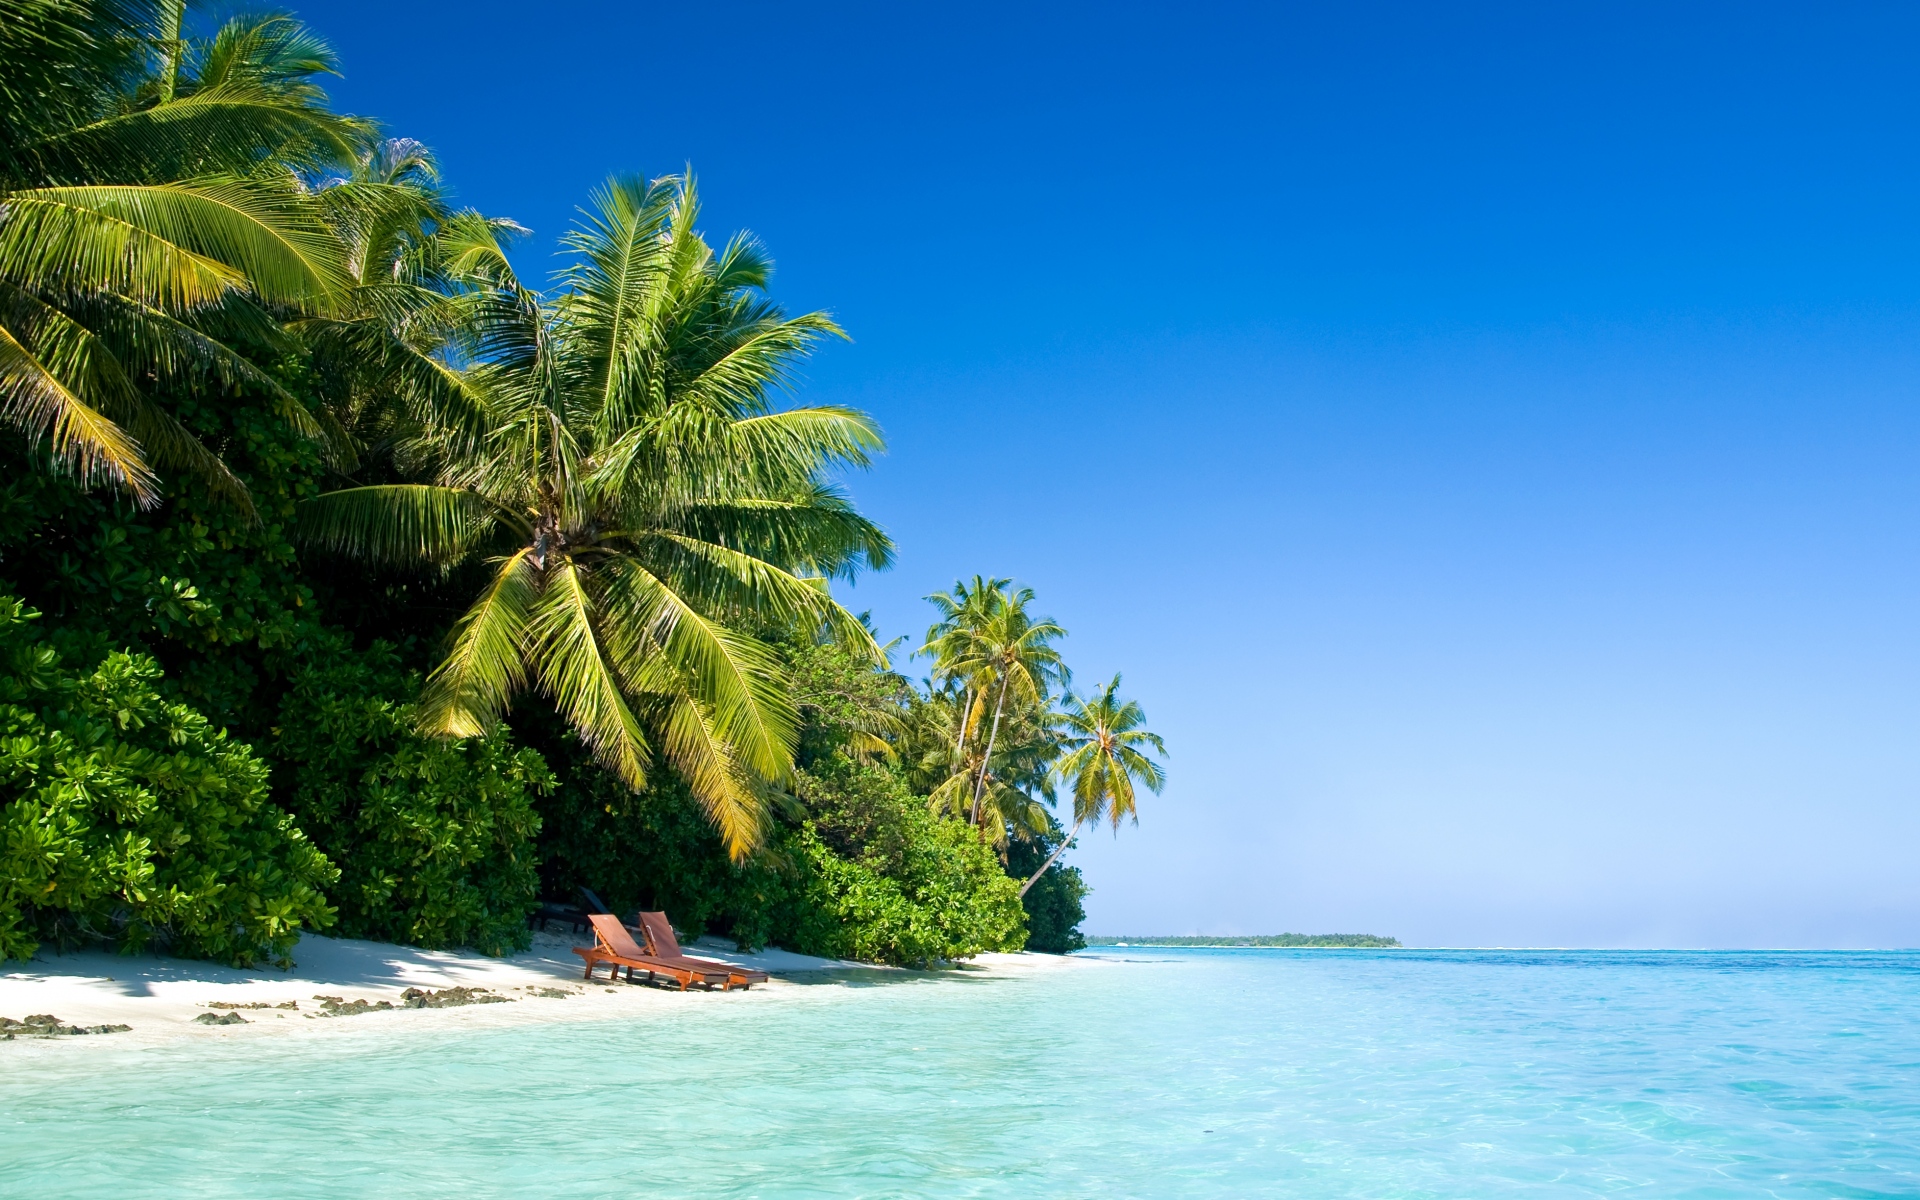 Картинки Мальдивы, тропический, пляж, пальмы, лето, тепло фото и обои на рабочий стол